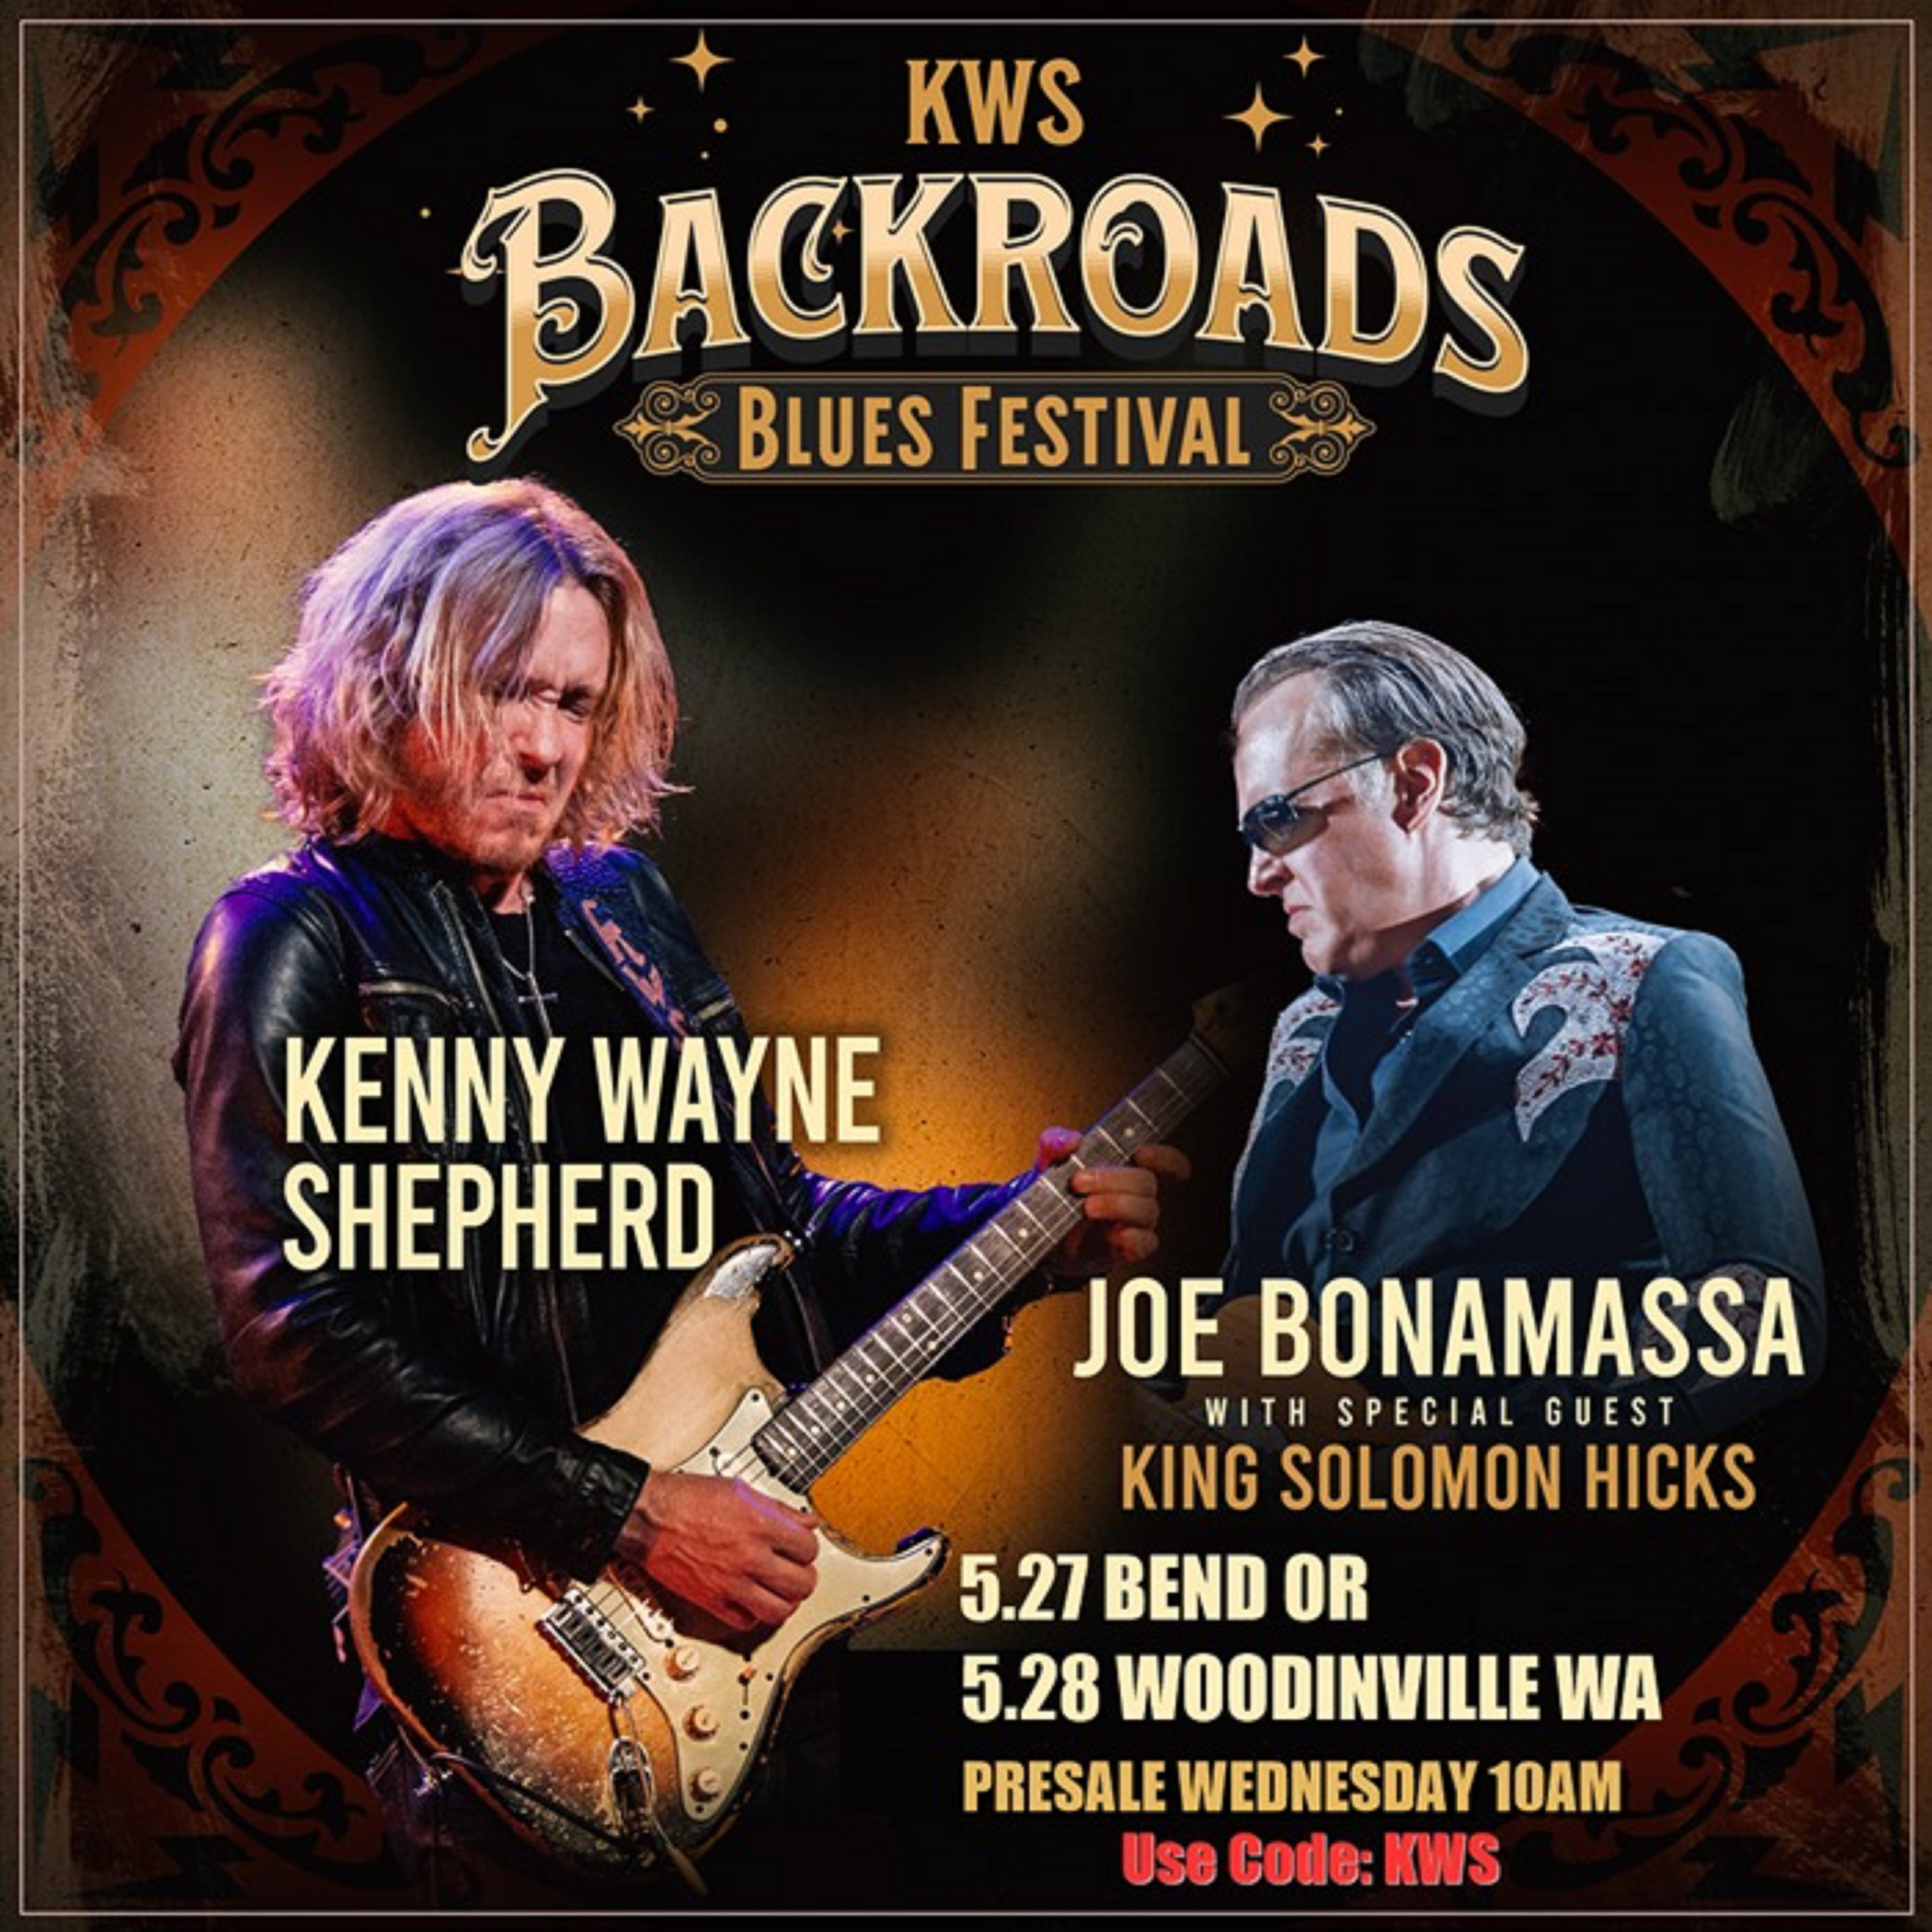 Kenny Wayne Shepherd, Joe Bonamassa On Second Annual "Backroads Blues Festival"